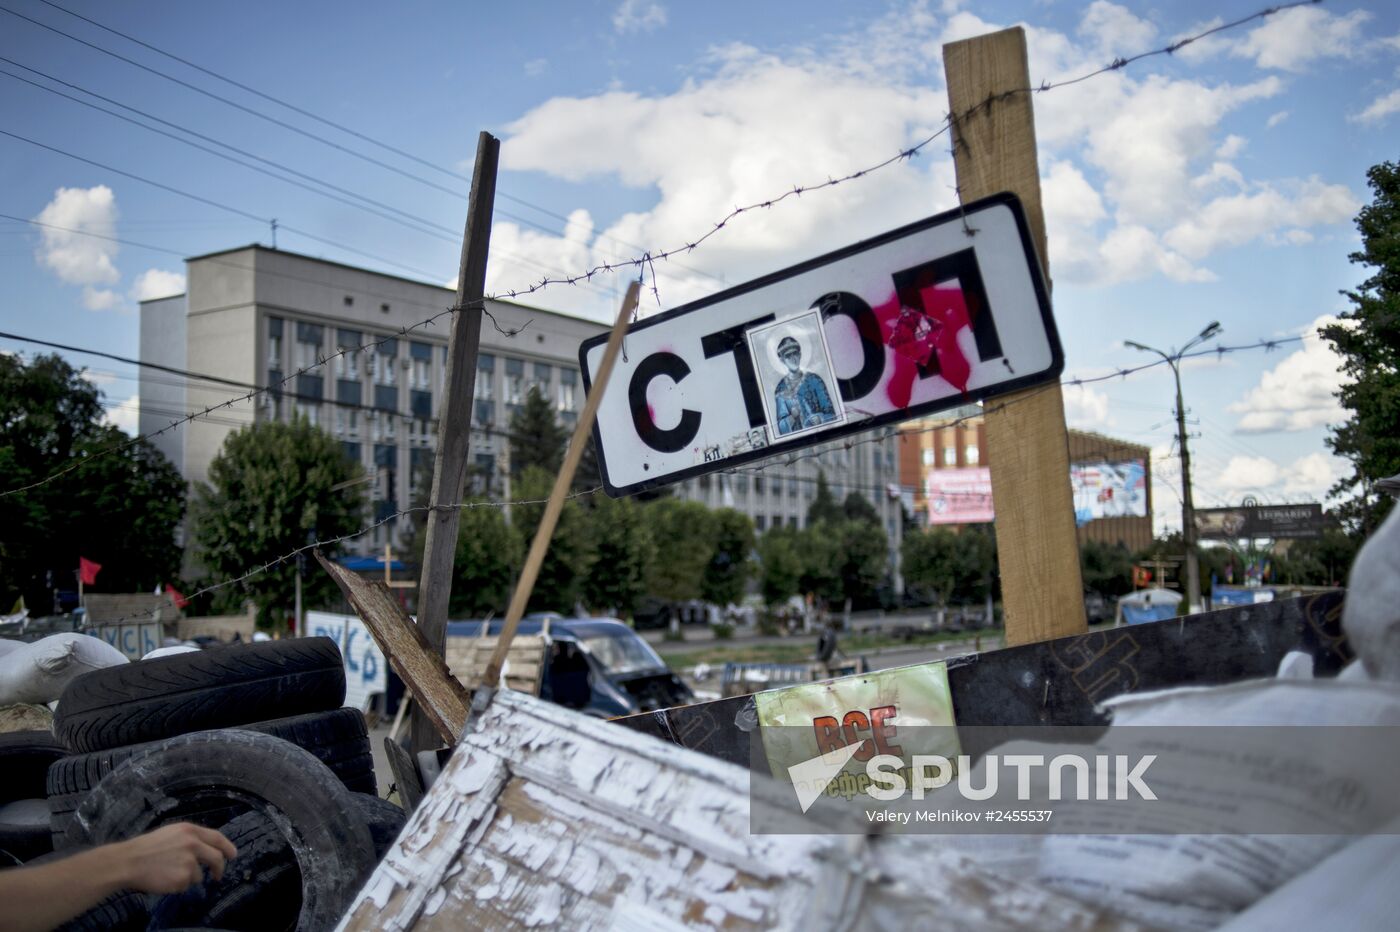 Barricades in Lugansk